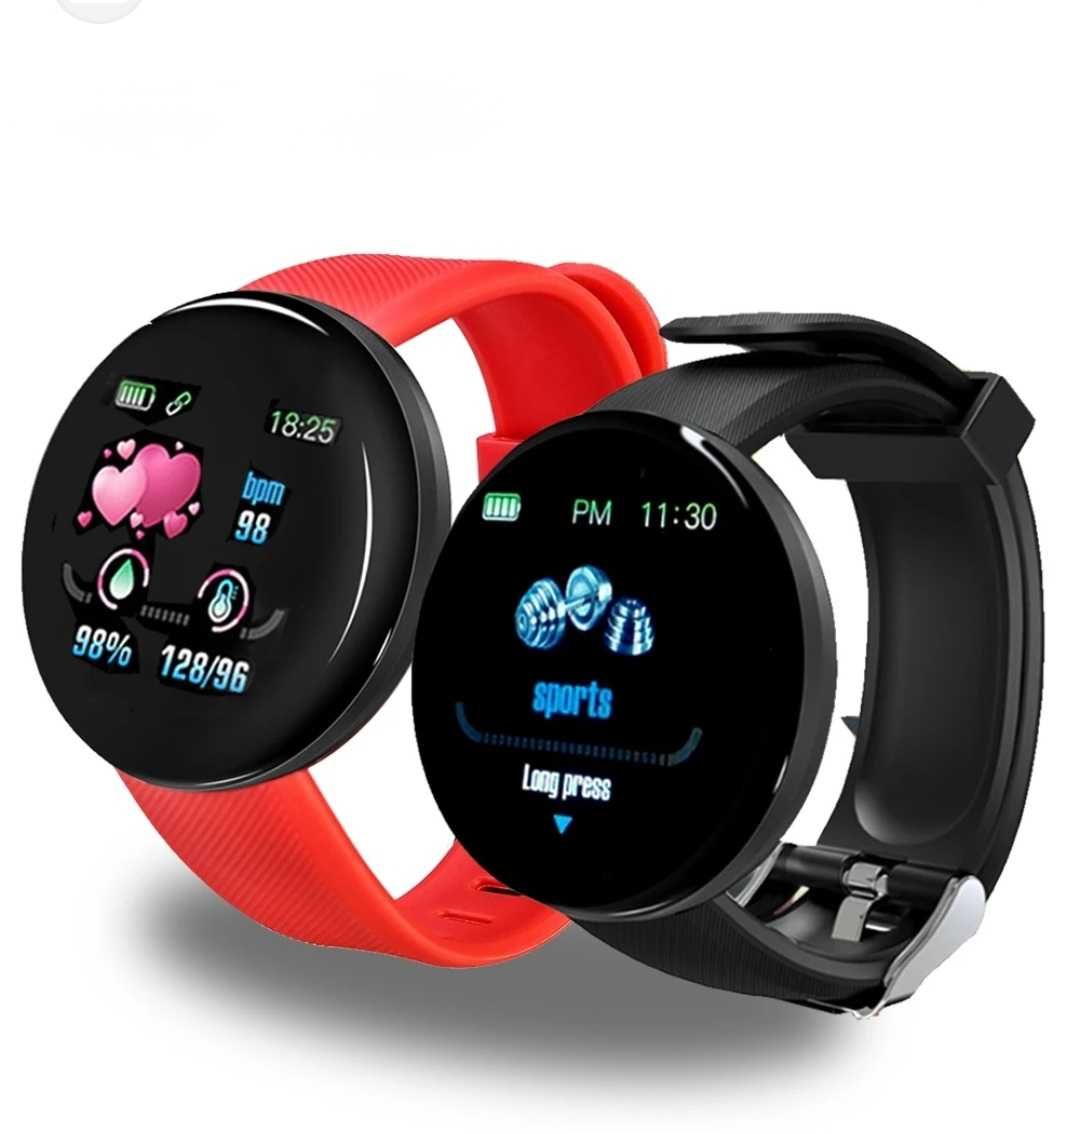 Set Smartwatch + 2 Curele Negru-Roșu. Vezi apeluri, mesaje, notificări